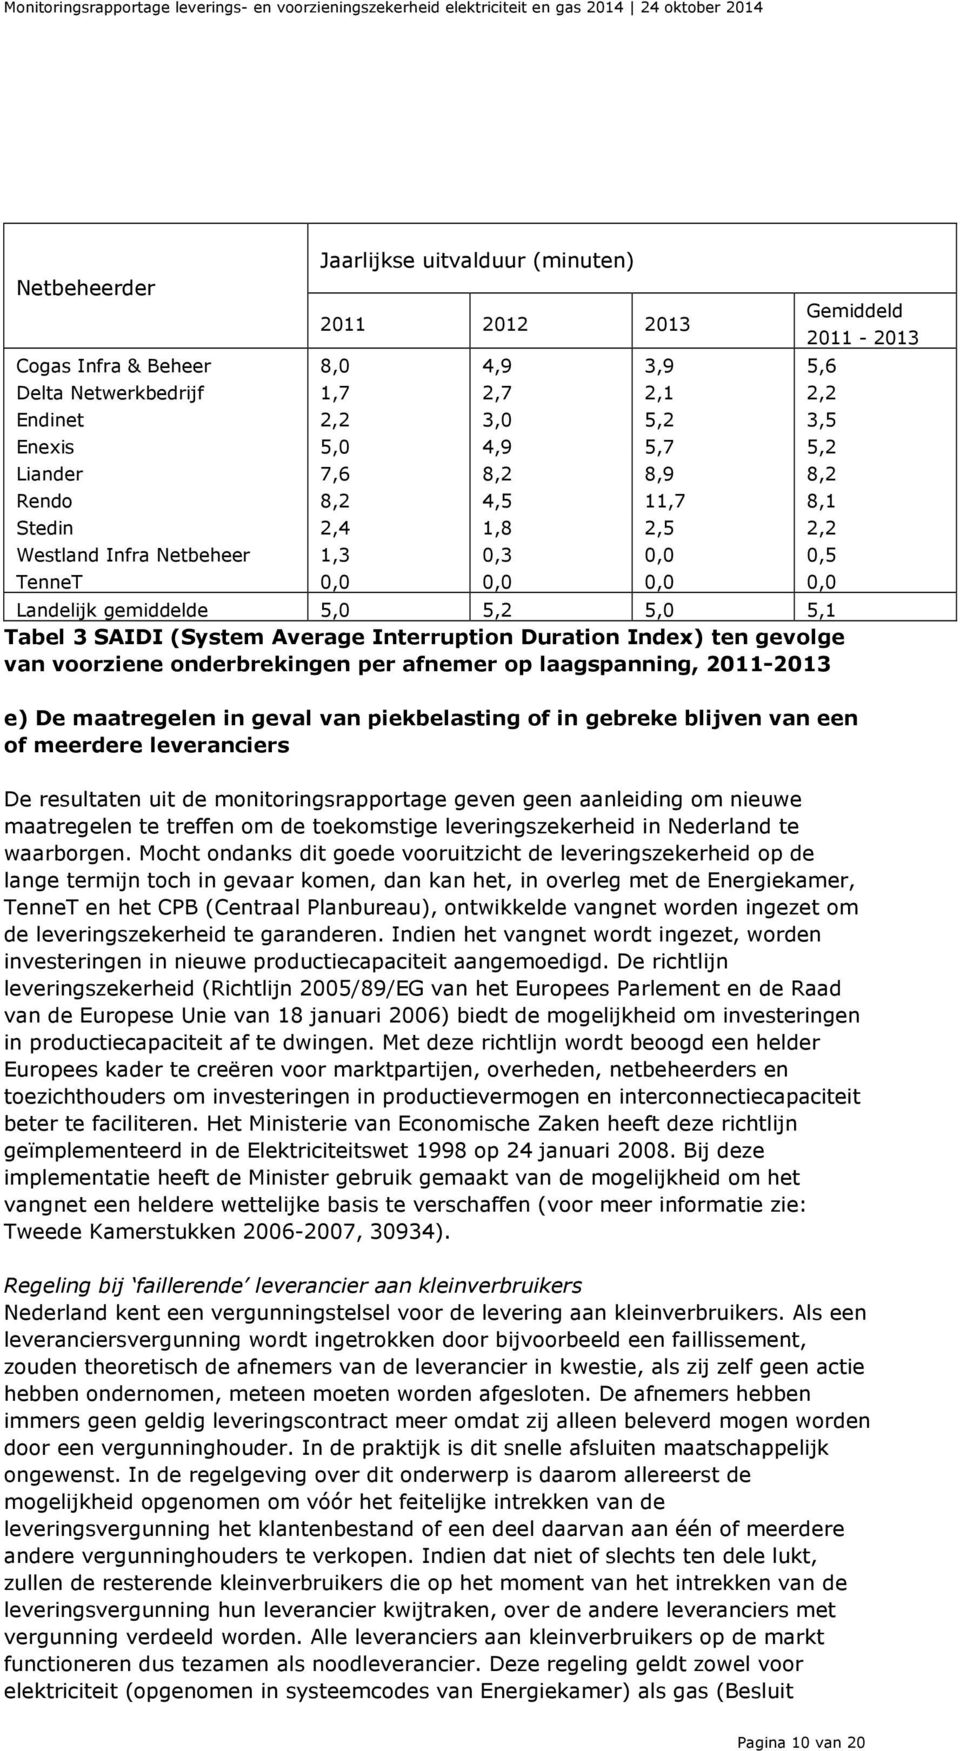 Duration Index) ten gevolge van voorziene onderbrekingen per afnemer op laagspanning, 2011-2013 Gemiddeld e) De maatregelen in geval van piekbelasting of in gebreke blijven van een of meerdere